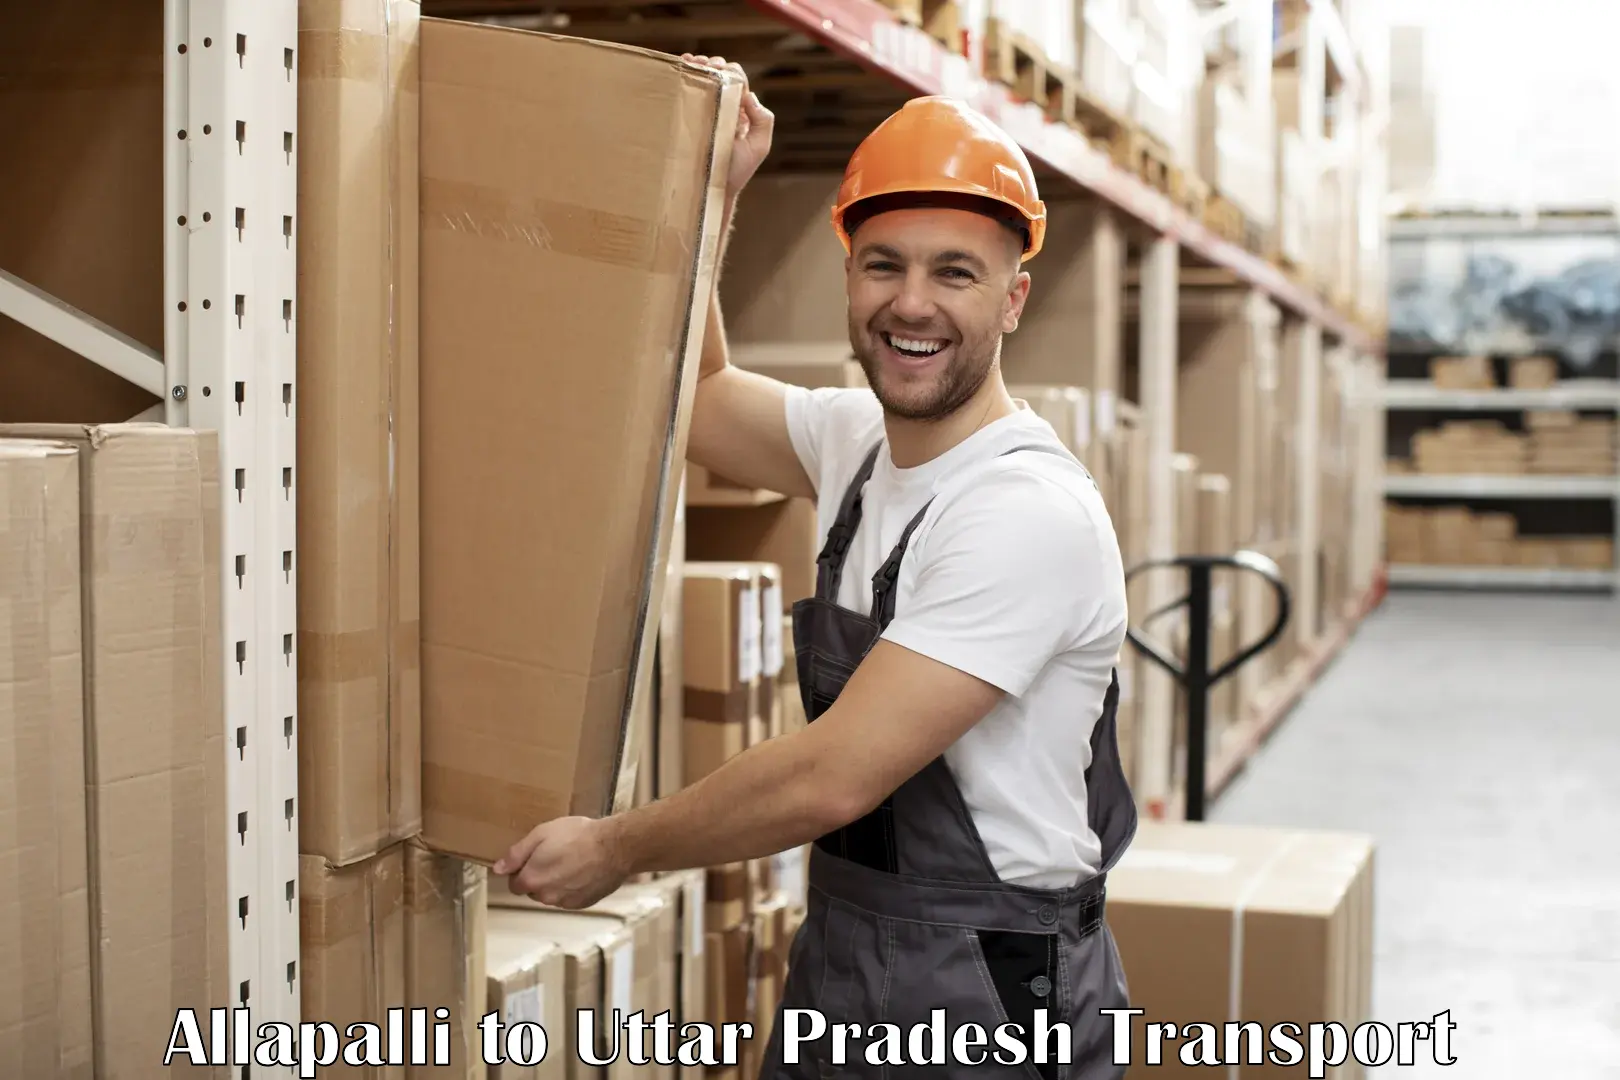 Interstate transport services Allapalli to Chandpur